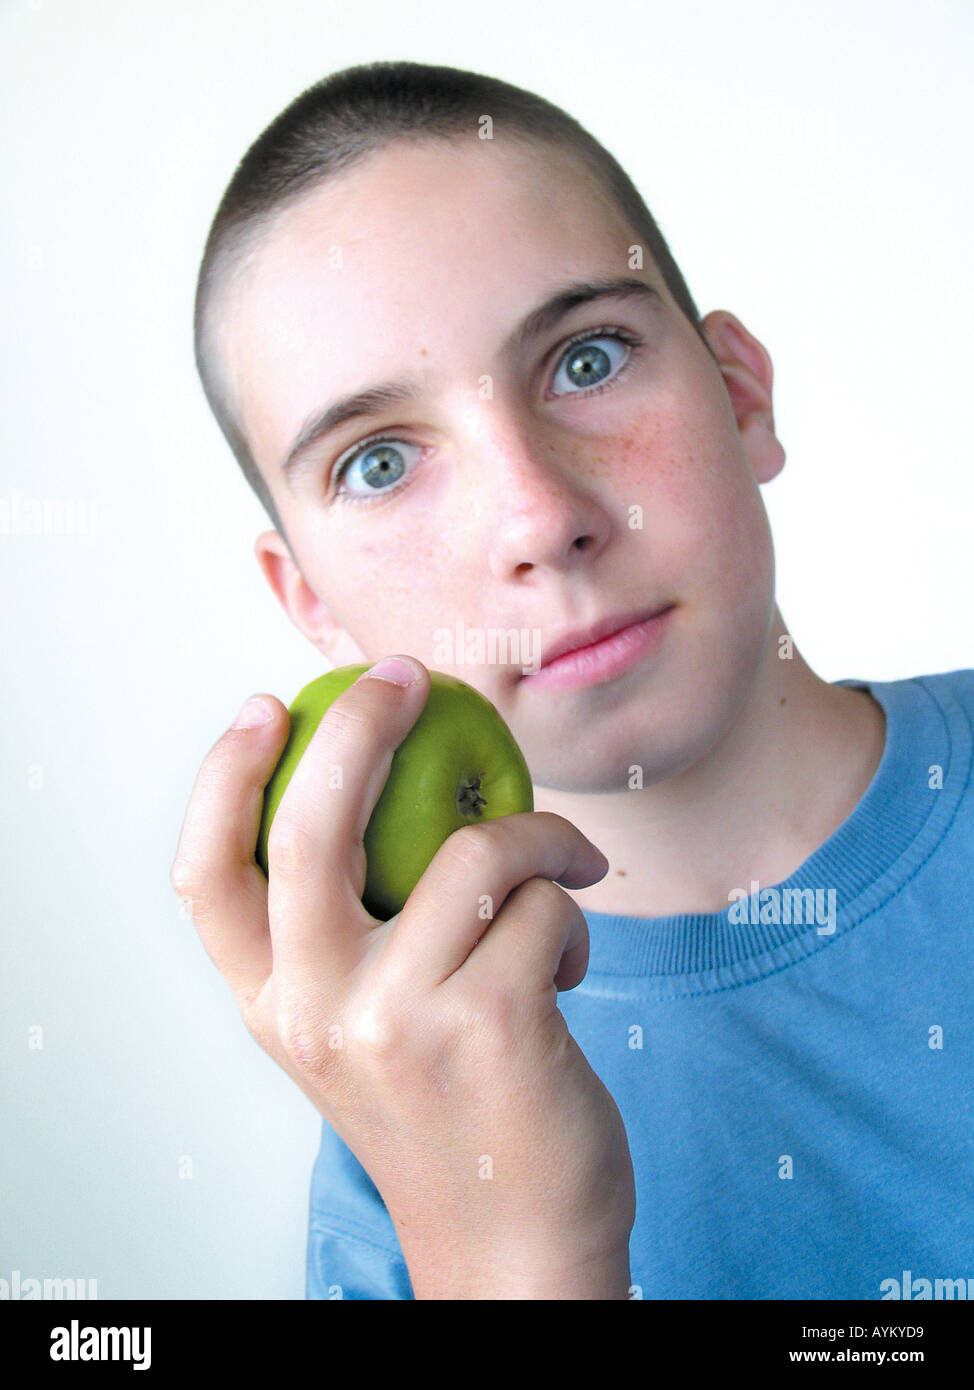 Junge haelt einen gruenen Apfel in der Hand Stock Photo